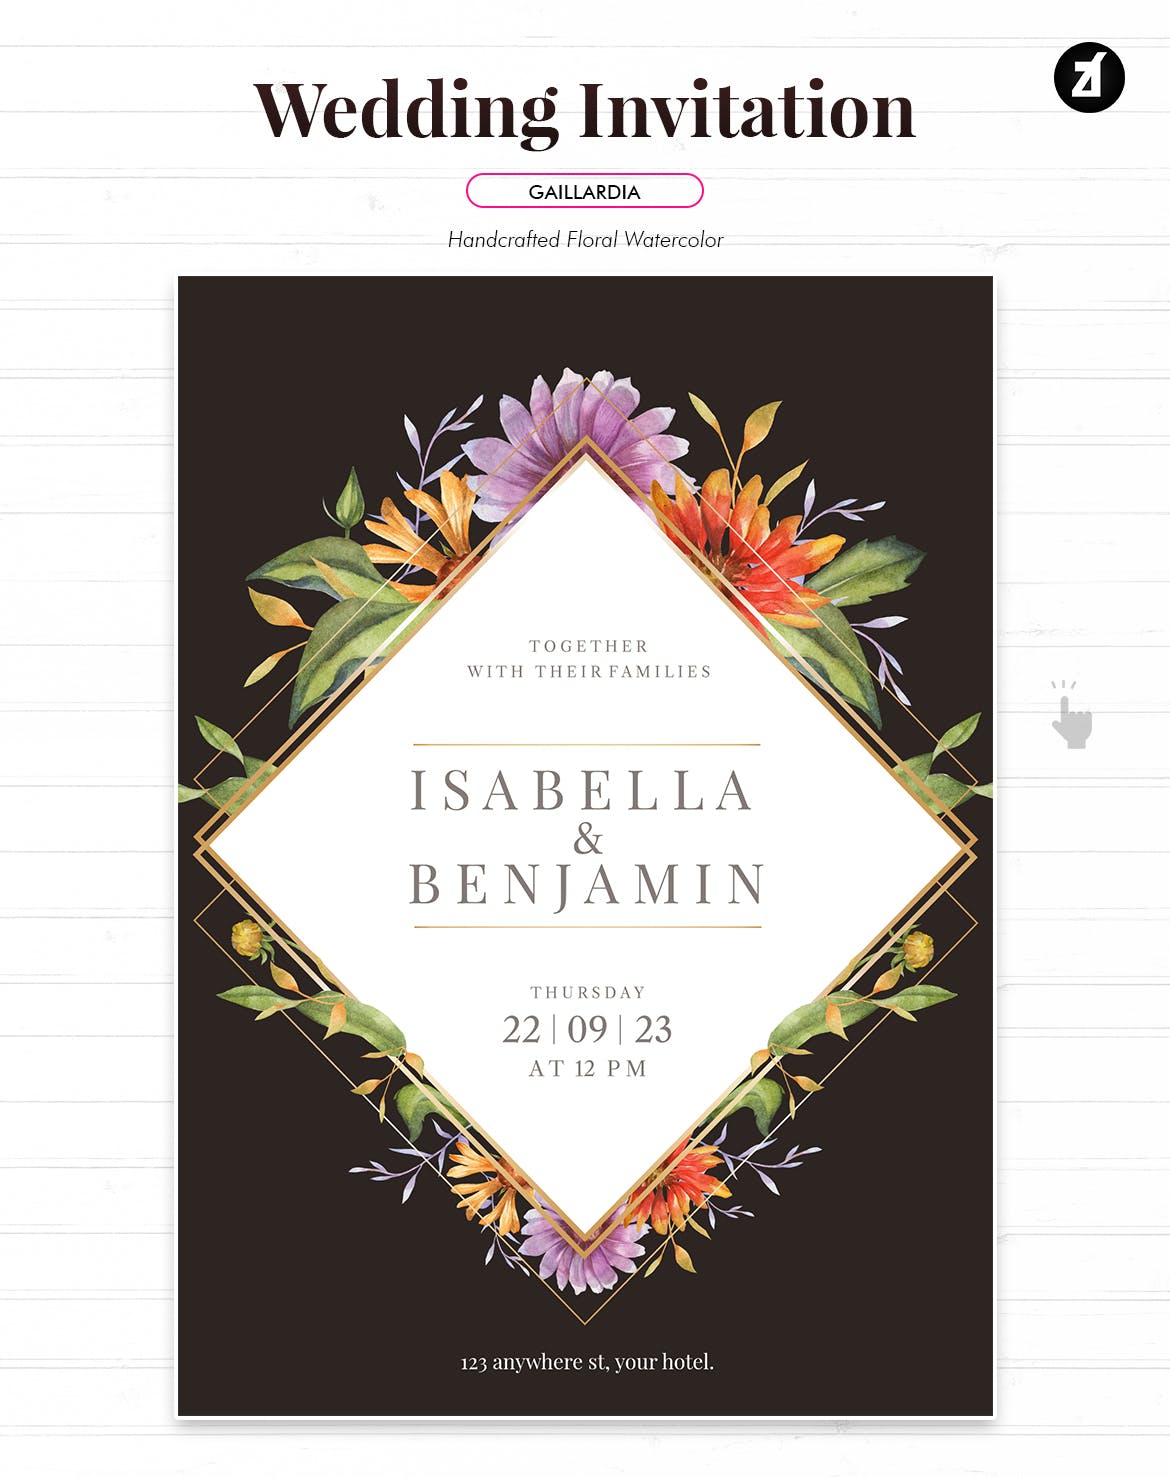 简约手绘水彩风格的花卉花朵植物婚礼请见请帖海报设计模板